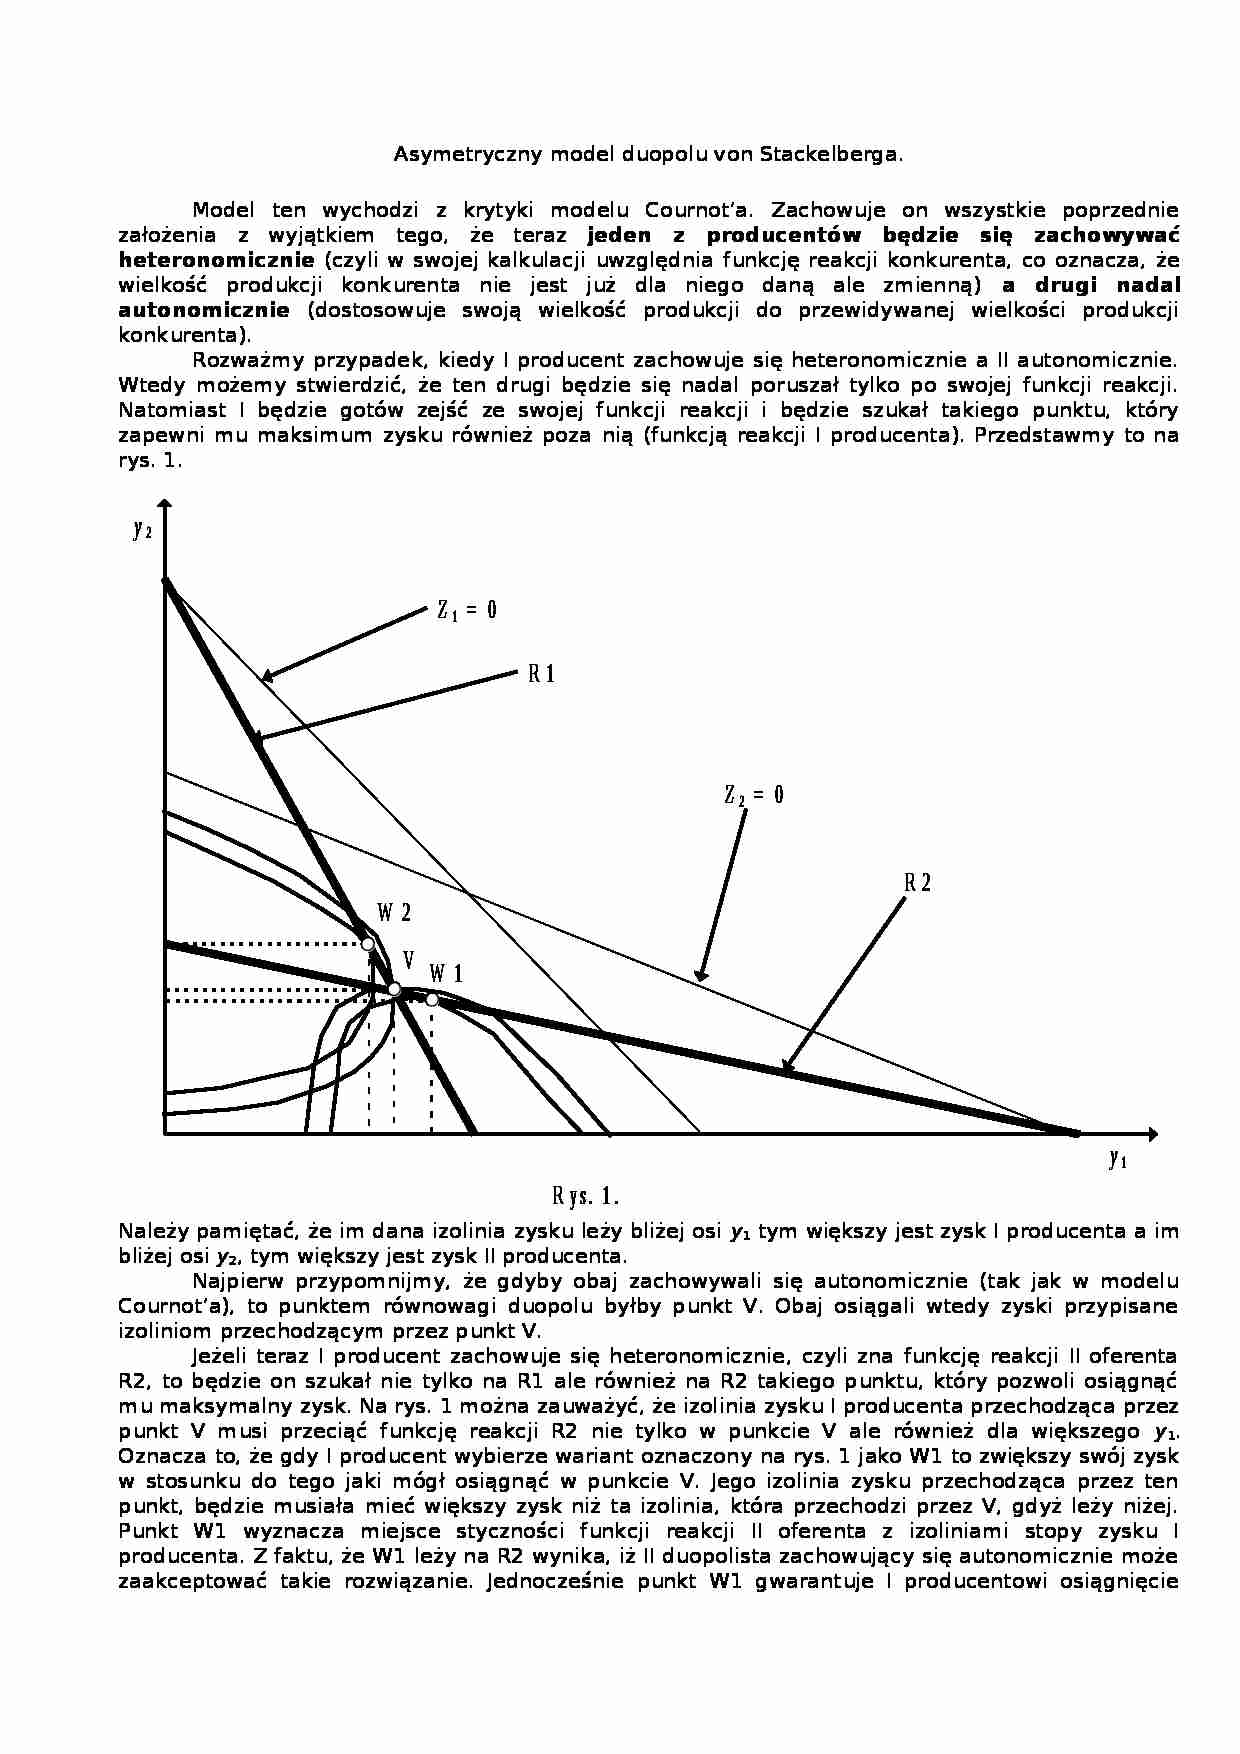 Asymetryczny model duopolu von Stackelberga - Stopa zysku - strona 1